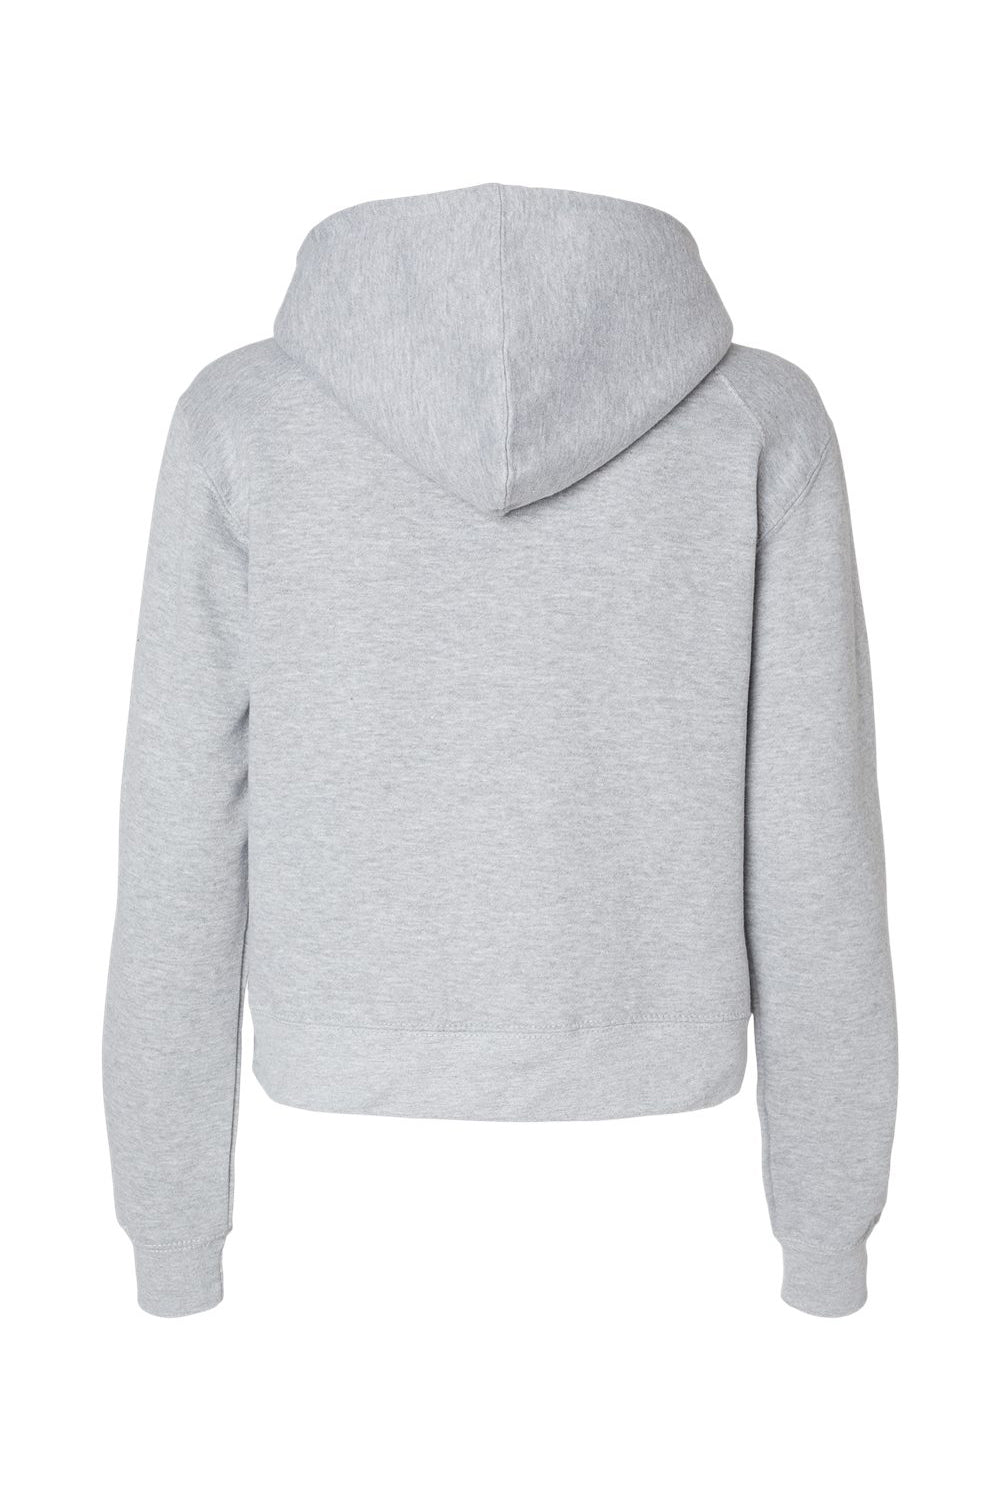 Badger 1261 Womens Crop Hooded Sweatshirt Hoodie Oxford Grey Flat Back